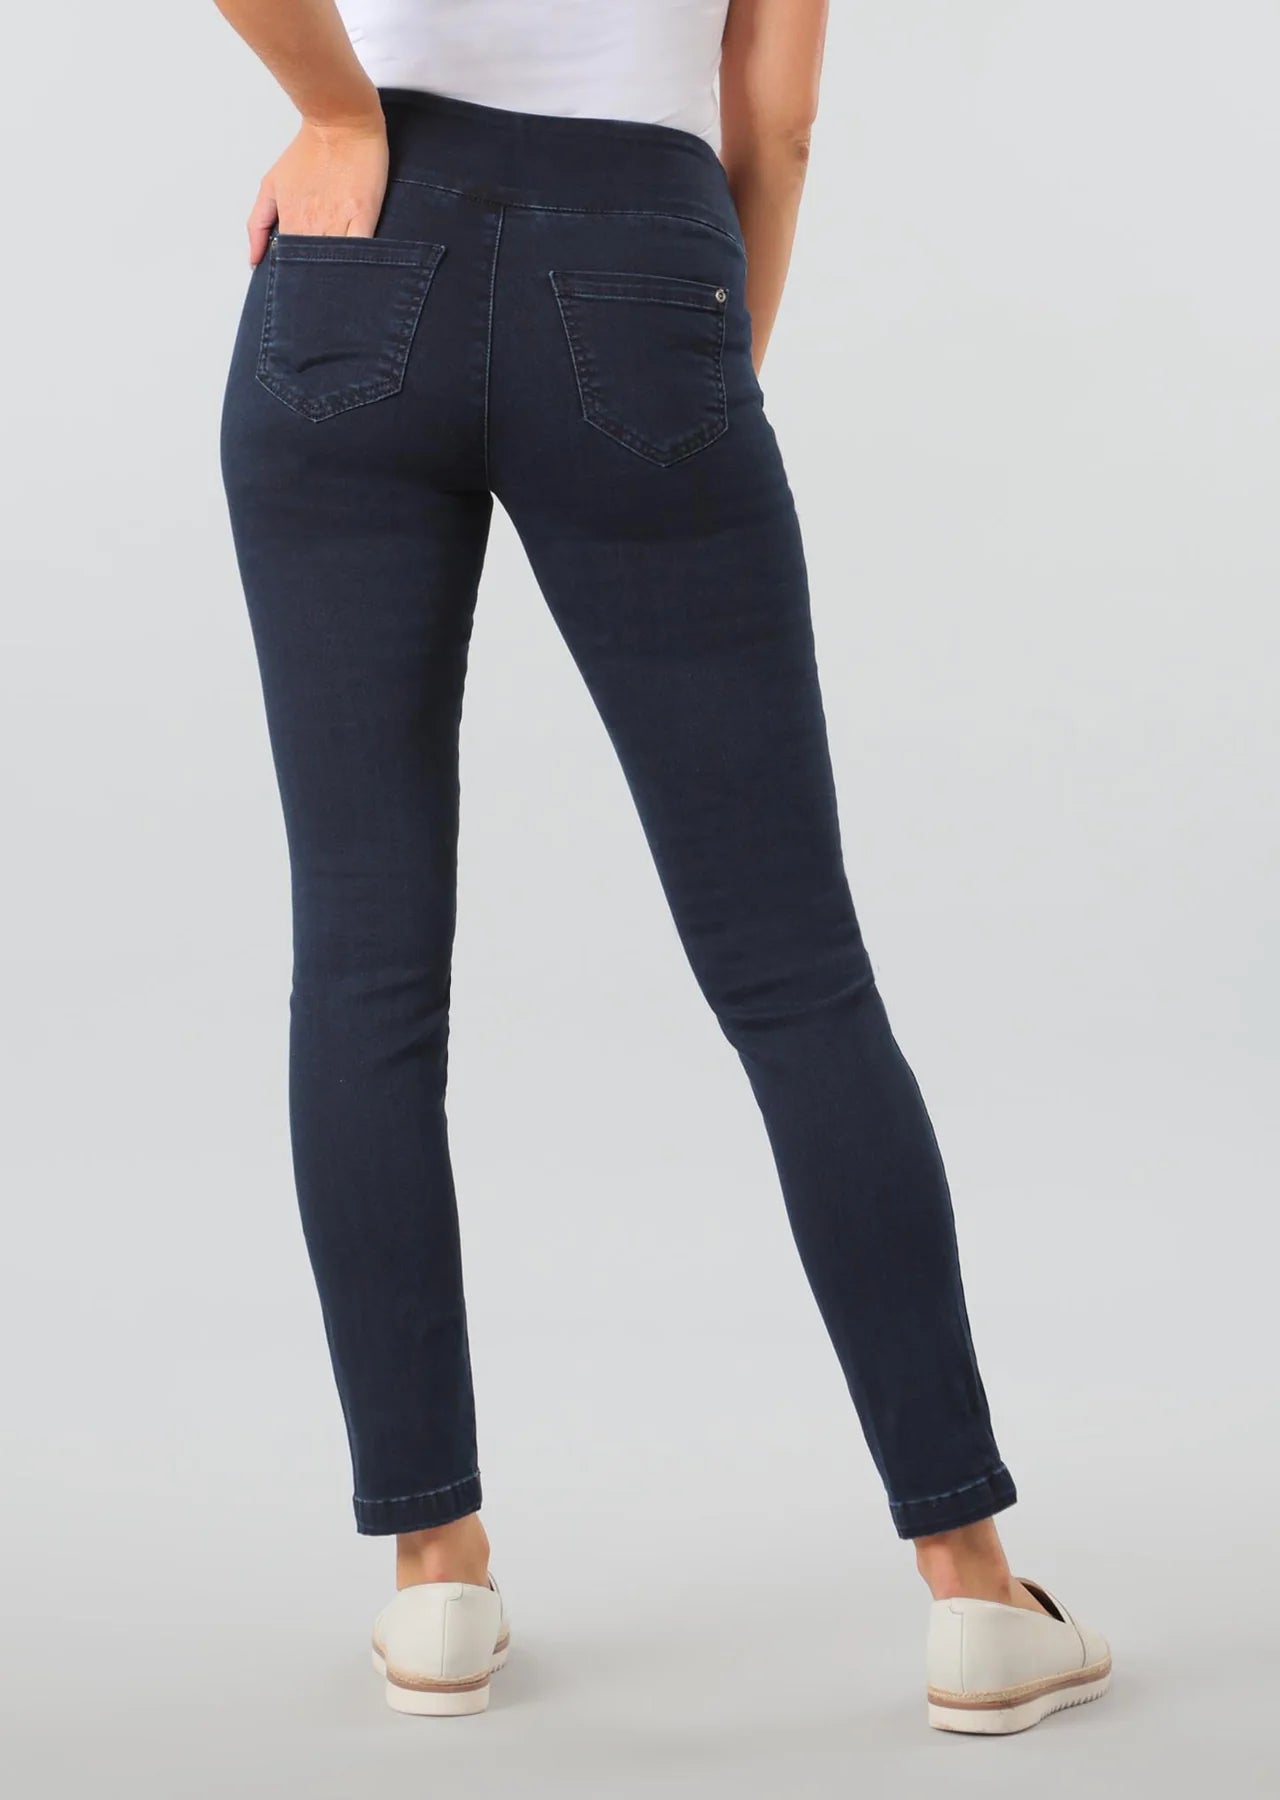 Lisette Jeans - Pull on in Blue Denim